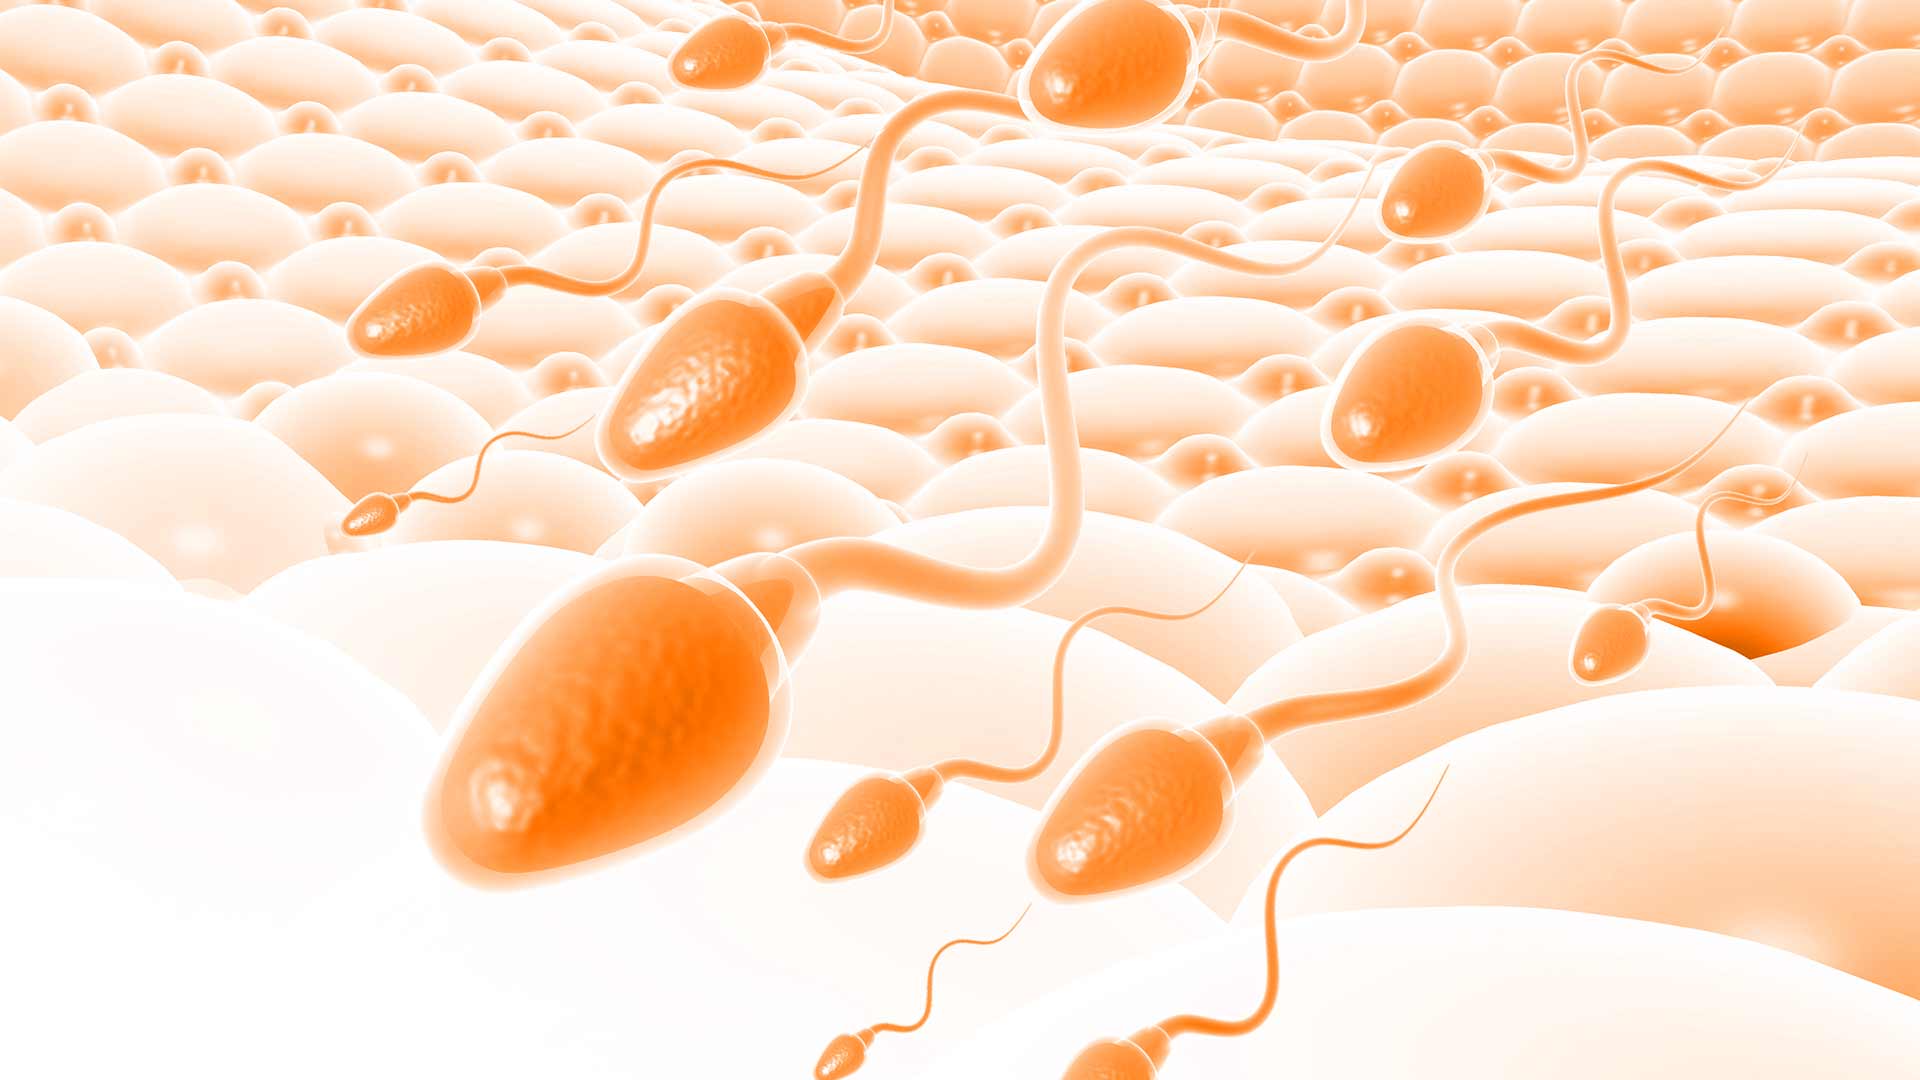 How Do Sperm Swim?